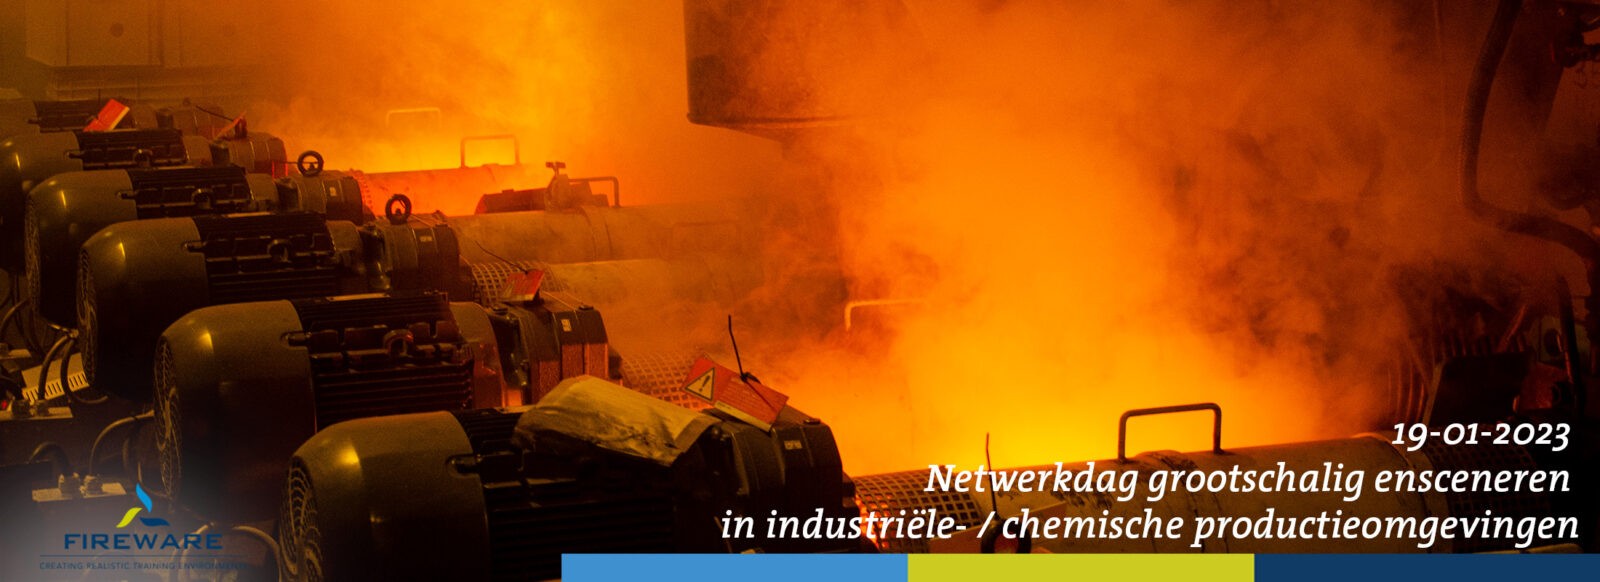 20221110 Netwerkdag grootschalig ensceneren in industriële- chemische productieomgevingen_001_web